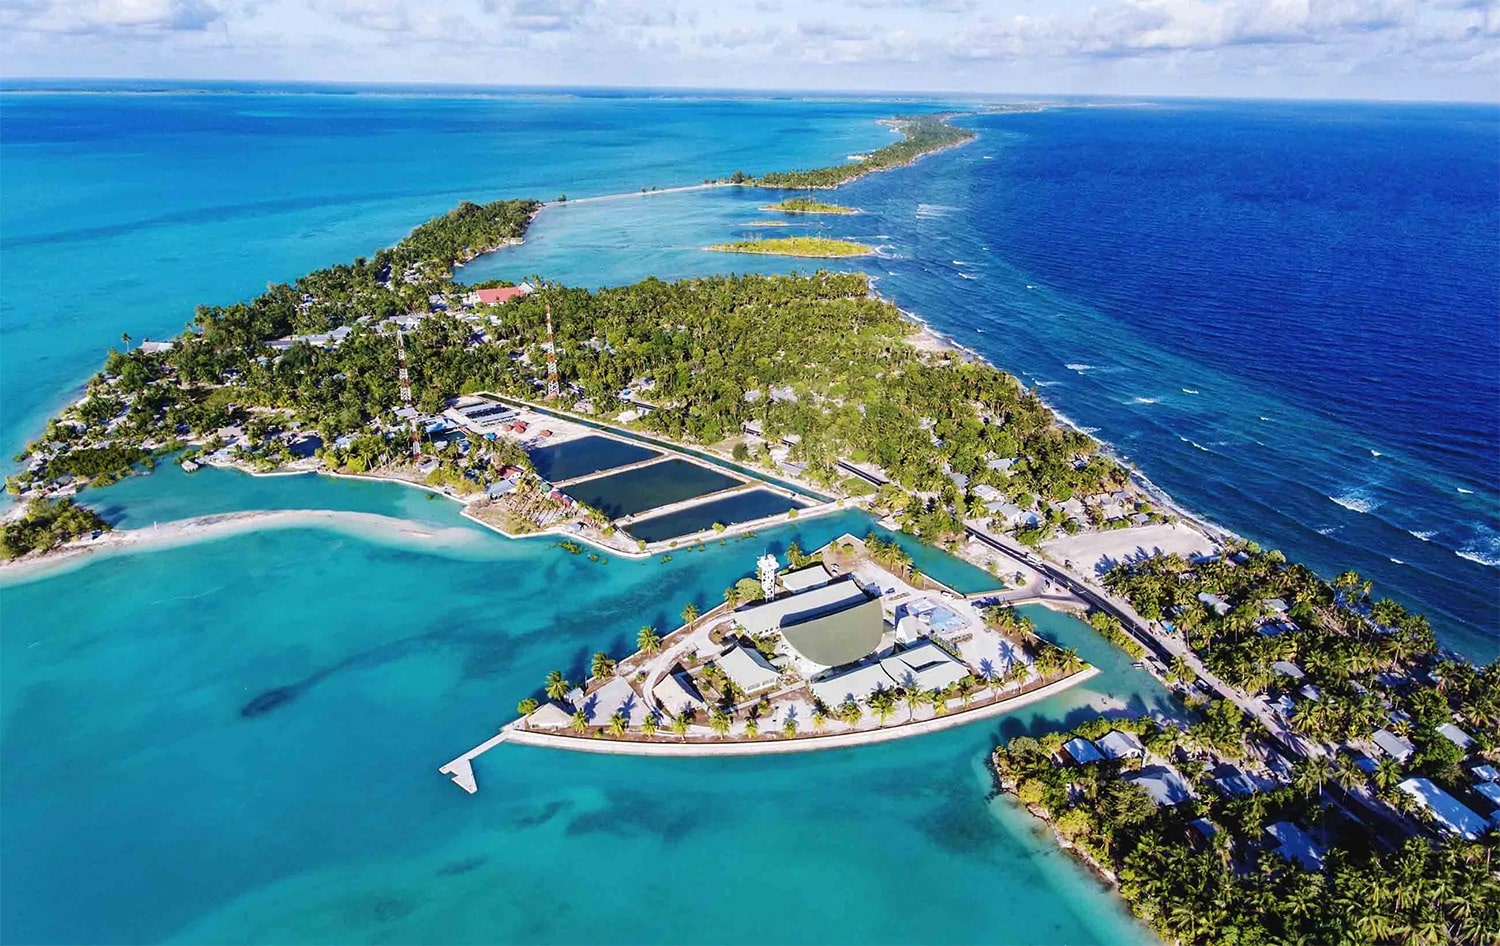 36 interesting facts about Kiribati